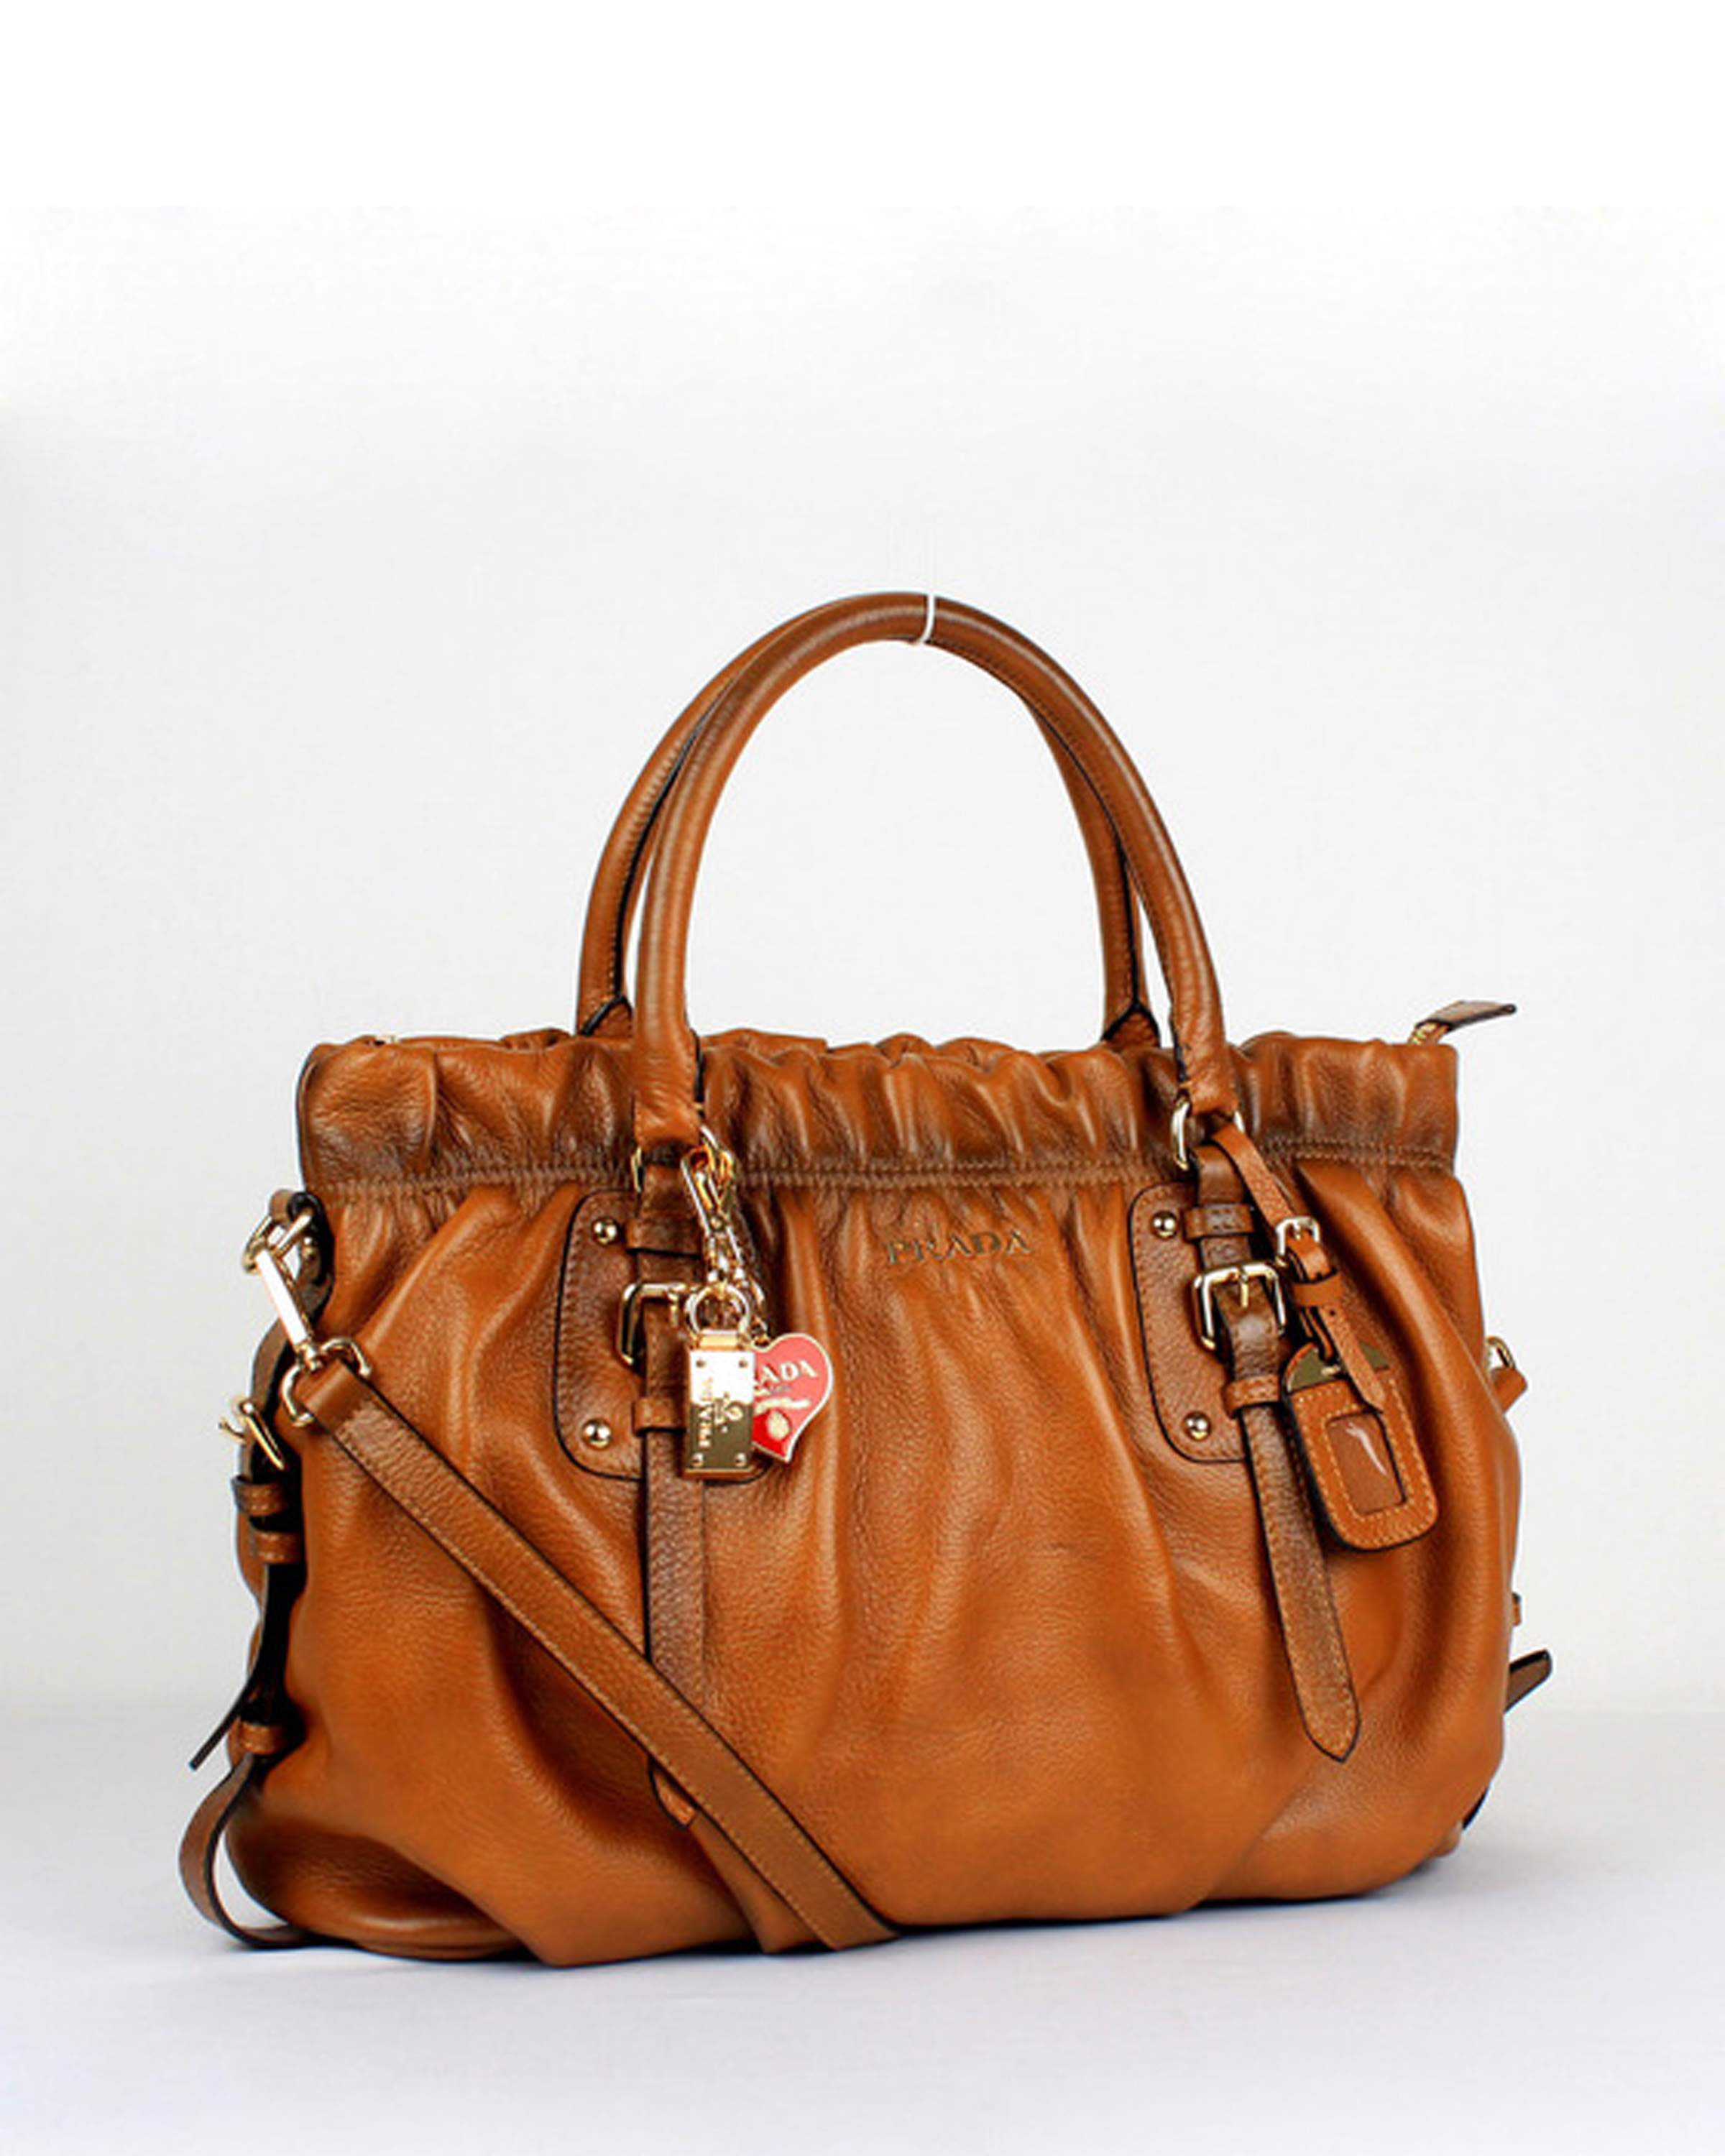 Prada Milled Leather Tote Bag - 6005 Tan